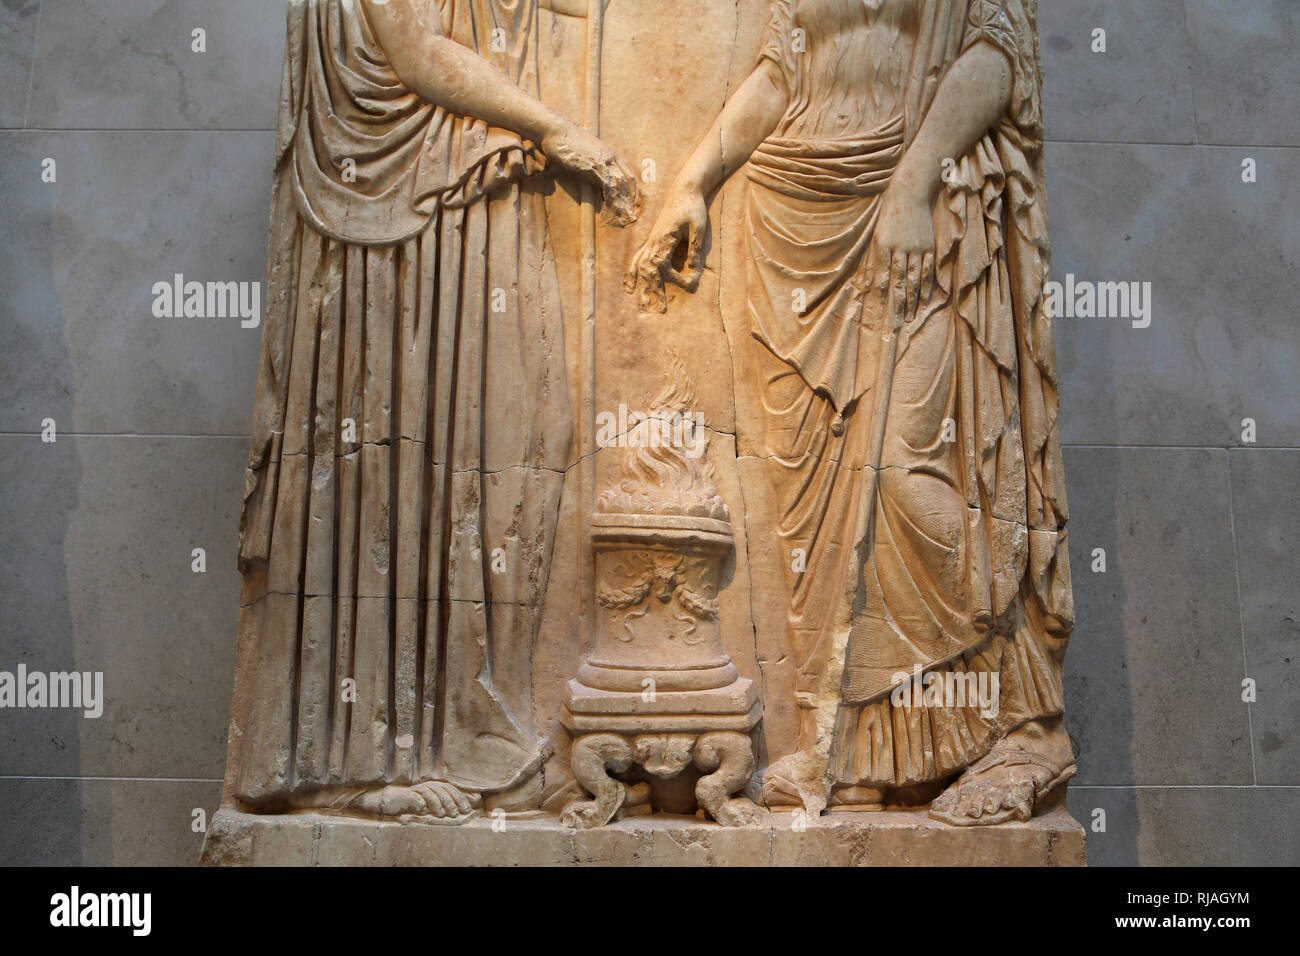 Relief mit 2 Göttinnen. Römische Kaiserzeit. 1st-2nd Cent. Altarlike Räuchergefäß. Kopie eines griechischen Original. Die Met, NY, USA Stockfoto